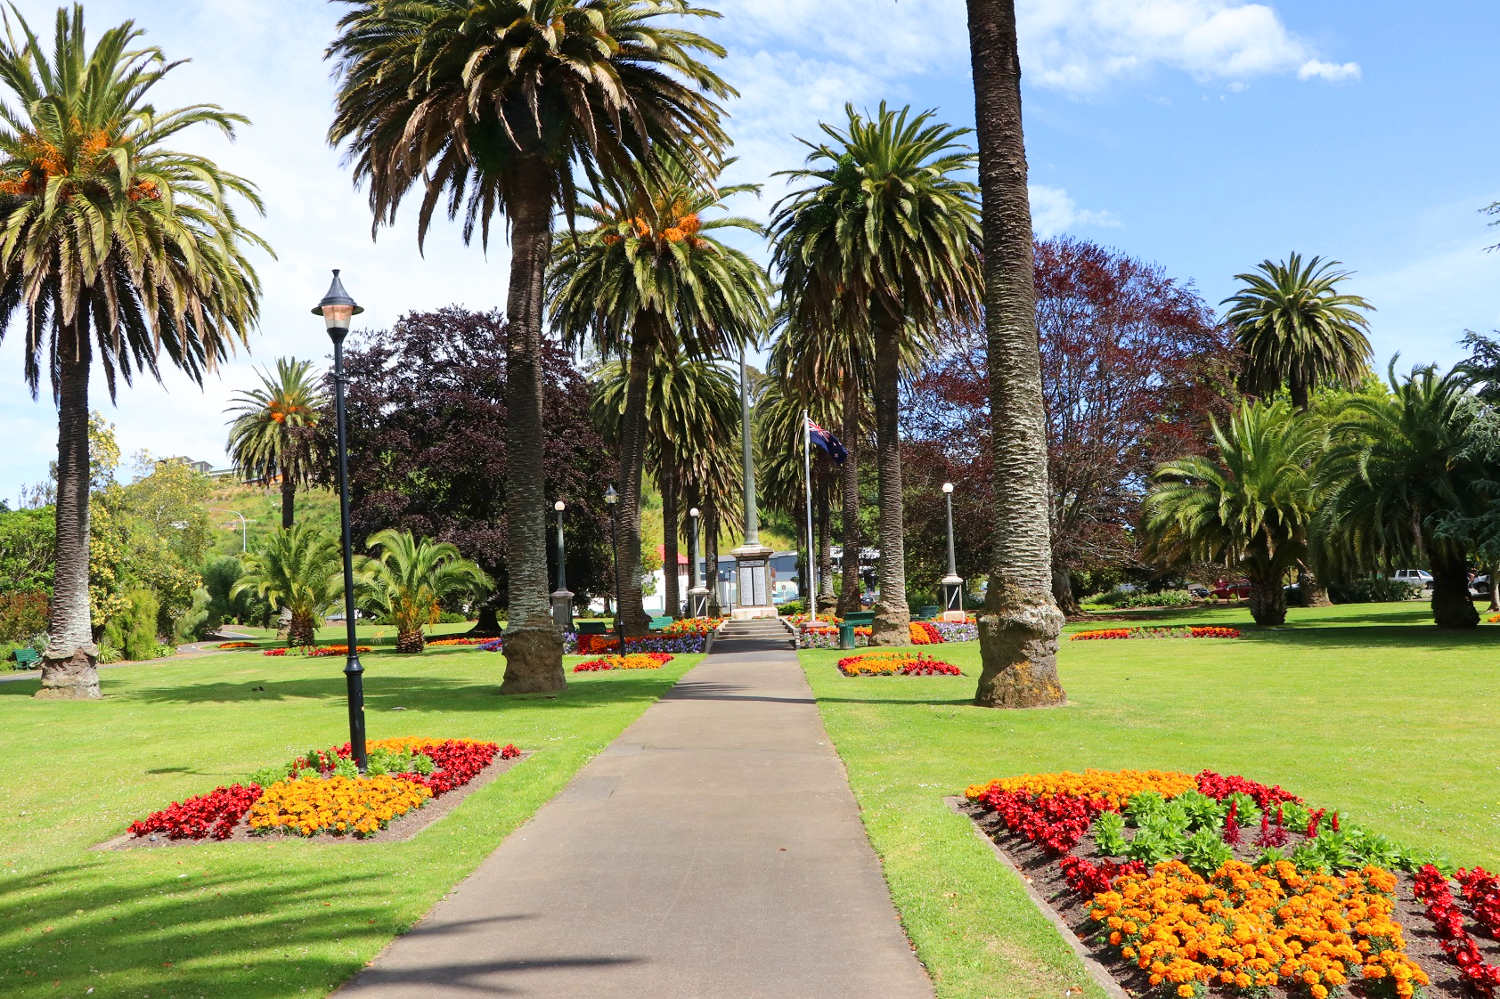 ANZAC Park, New Zealand @NelsonTasman